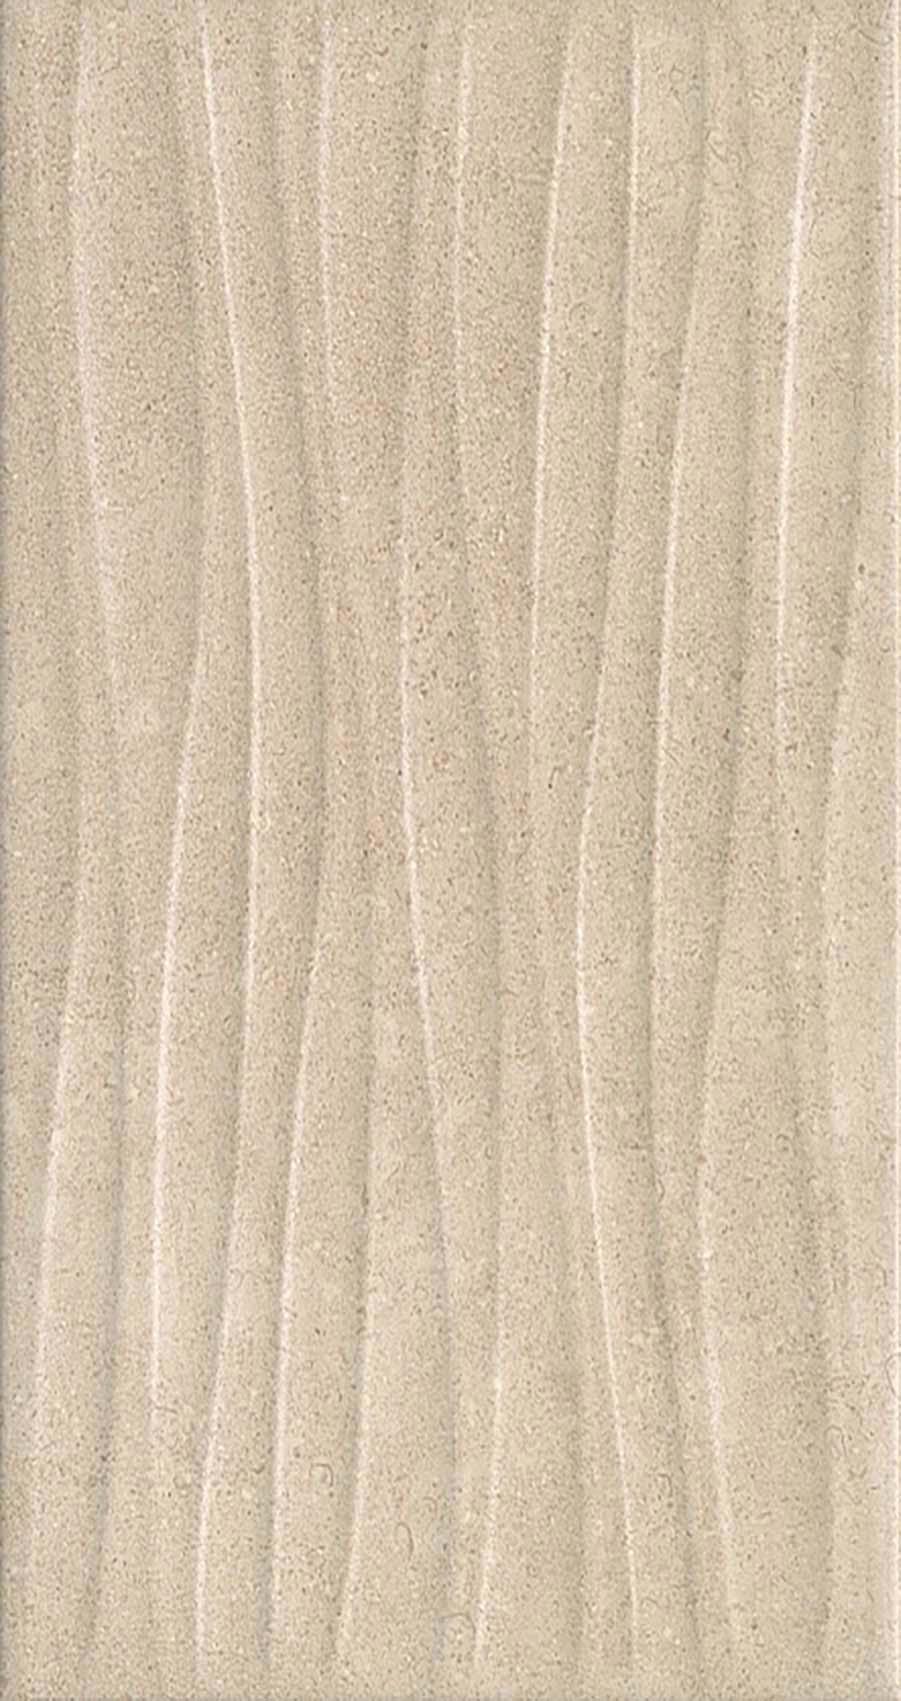 90291341 Керамическая плитка Золотой пляж темный бежевый структура 20х30см, цена за упаковку STLM-0171217 KERAMA MARAZZI